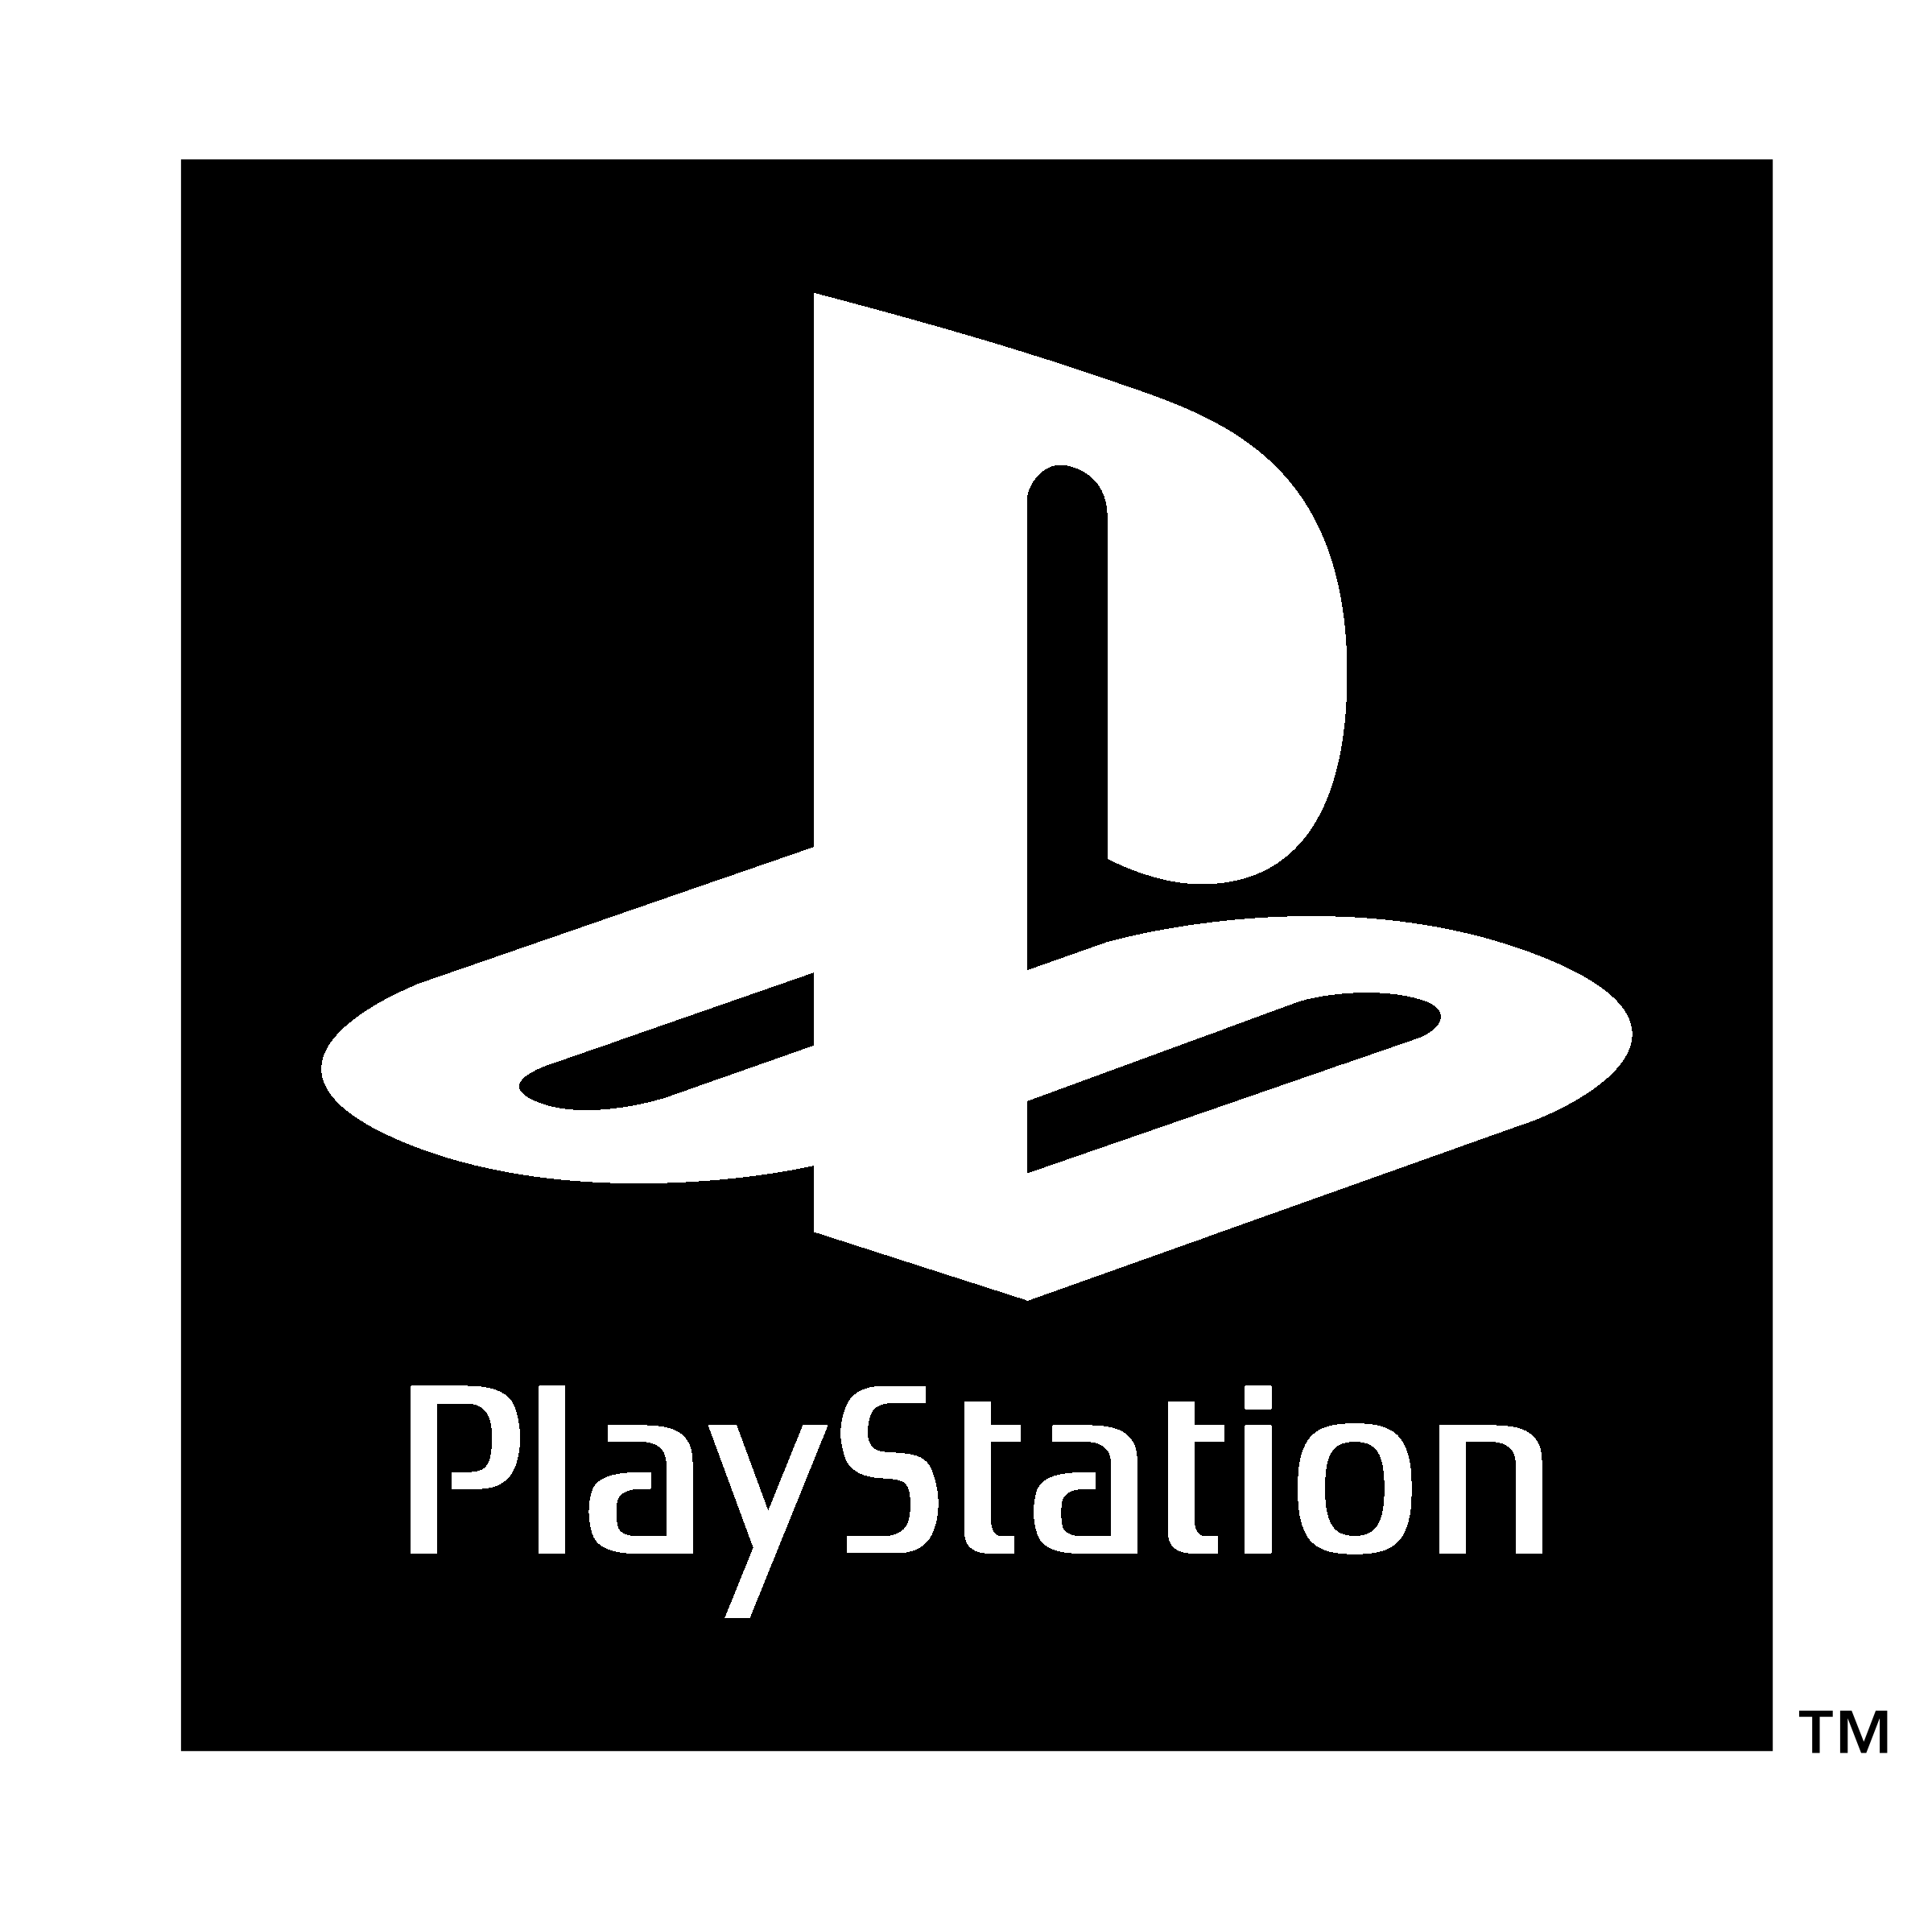 PlayStation logotipo png foto